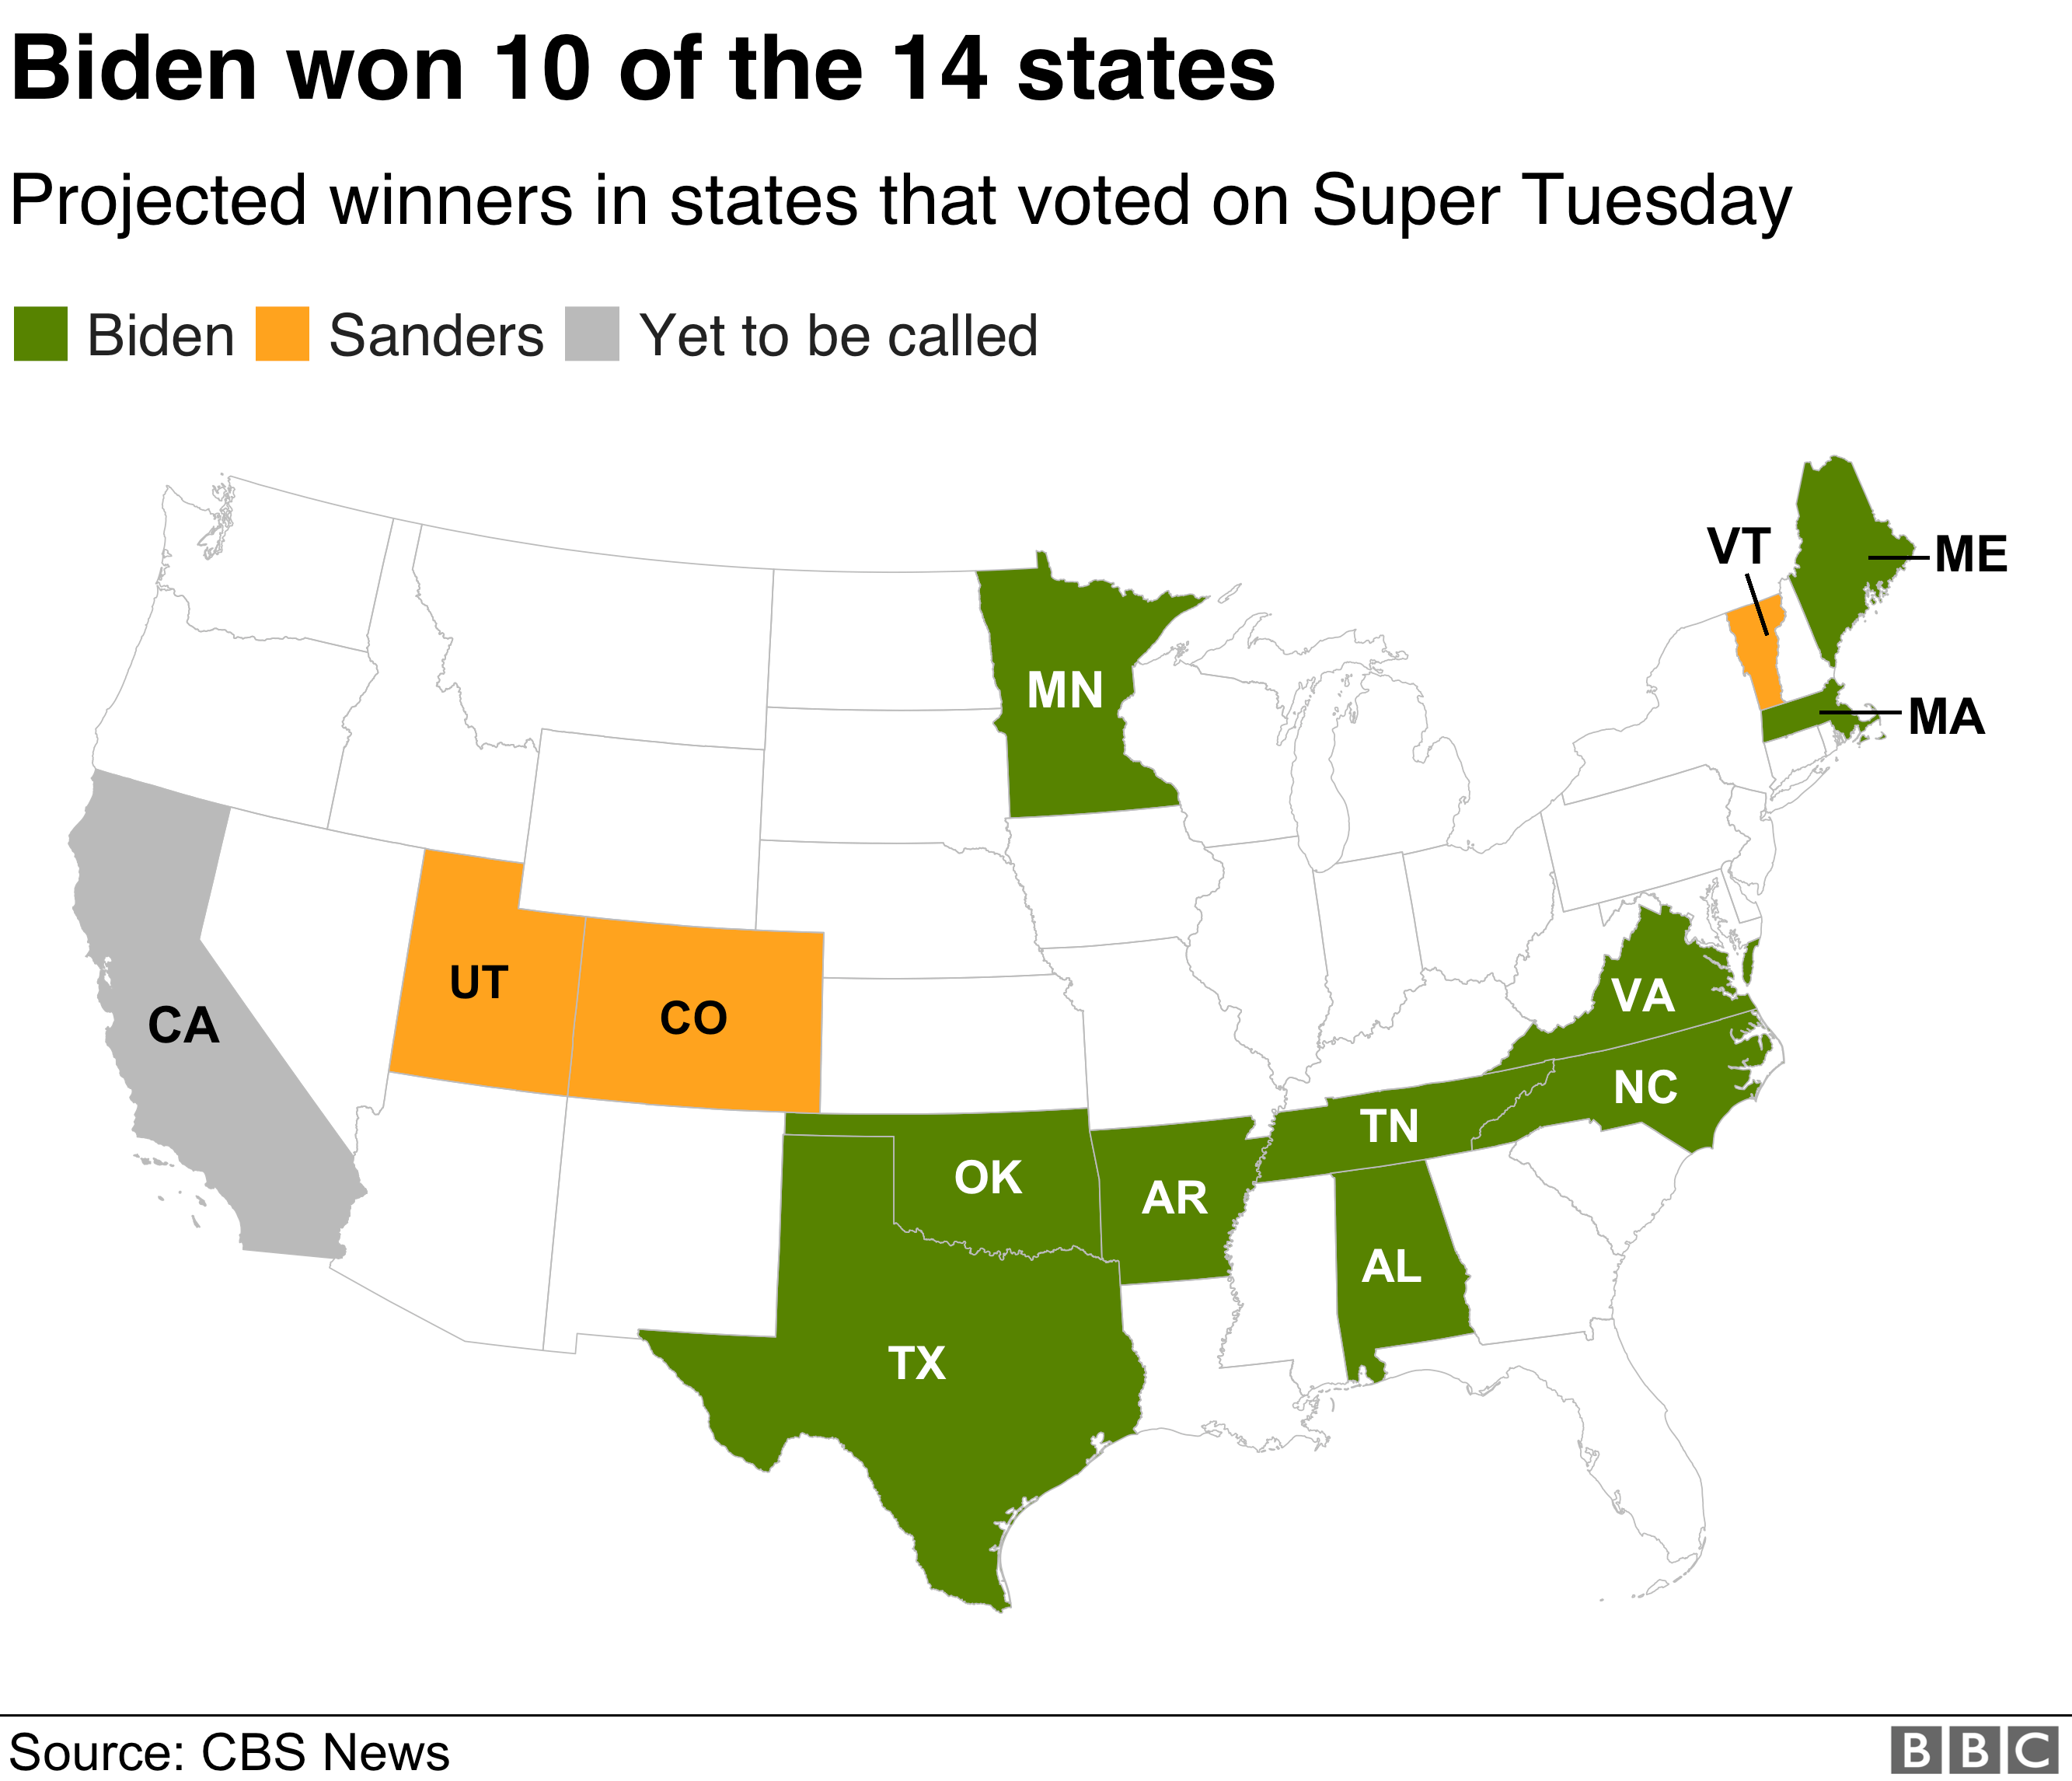 Карта, показывающая, какие кандидаты выиграли какие государства. Джо Байден победил в Алабаме, Арканзасе, Массачусетсе, Мэн, Миннесоте, Северной Каролине, Оклахоме, Теннесси, Техасе и Вирджинии. Берни Сандерс выиграл Колорадо, Юту и Вермонт. Калифорнию еще предстоит назвать.